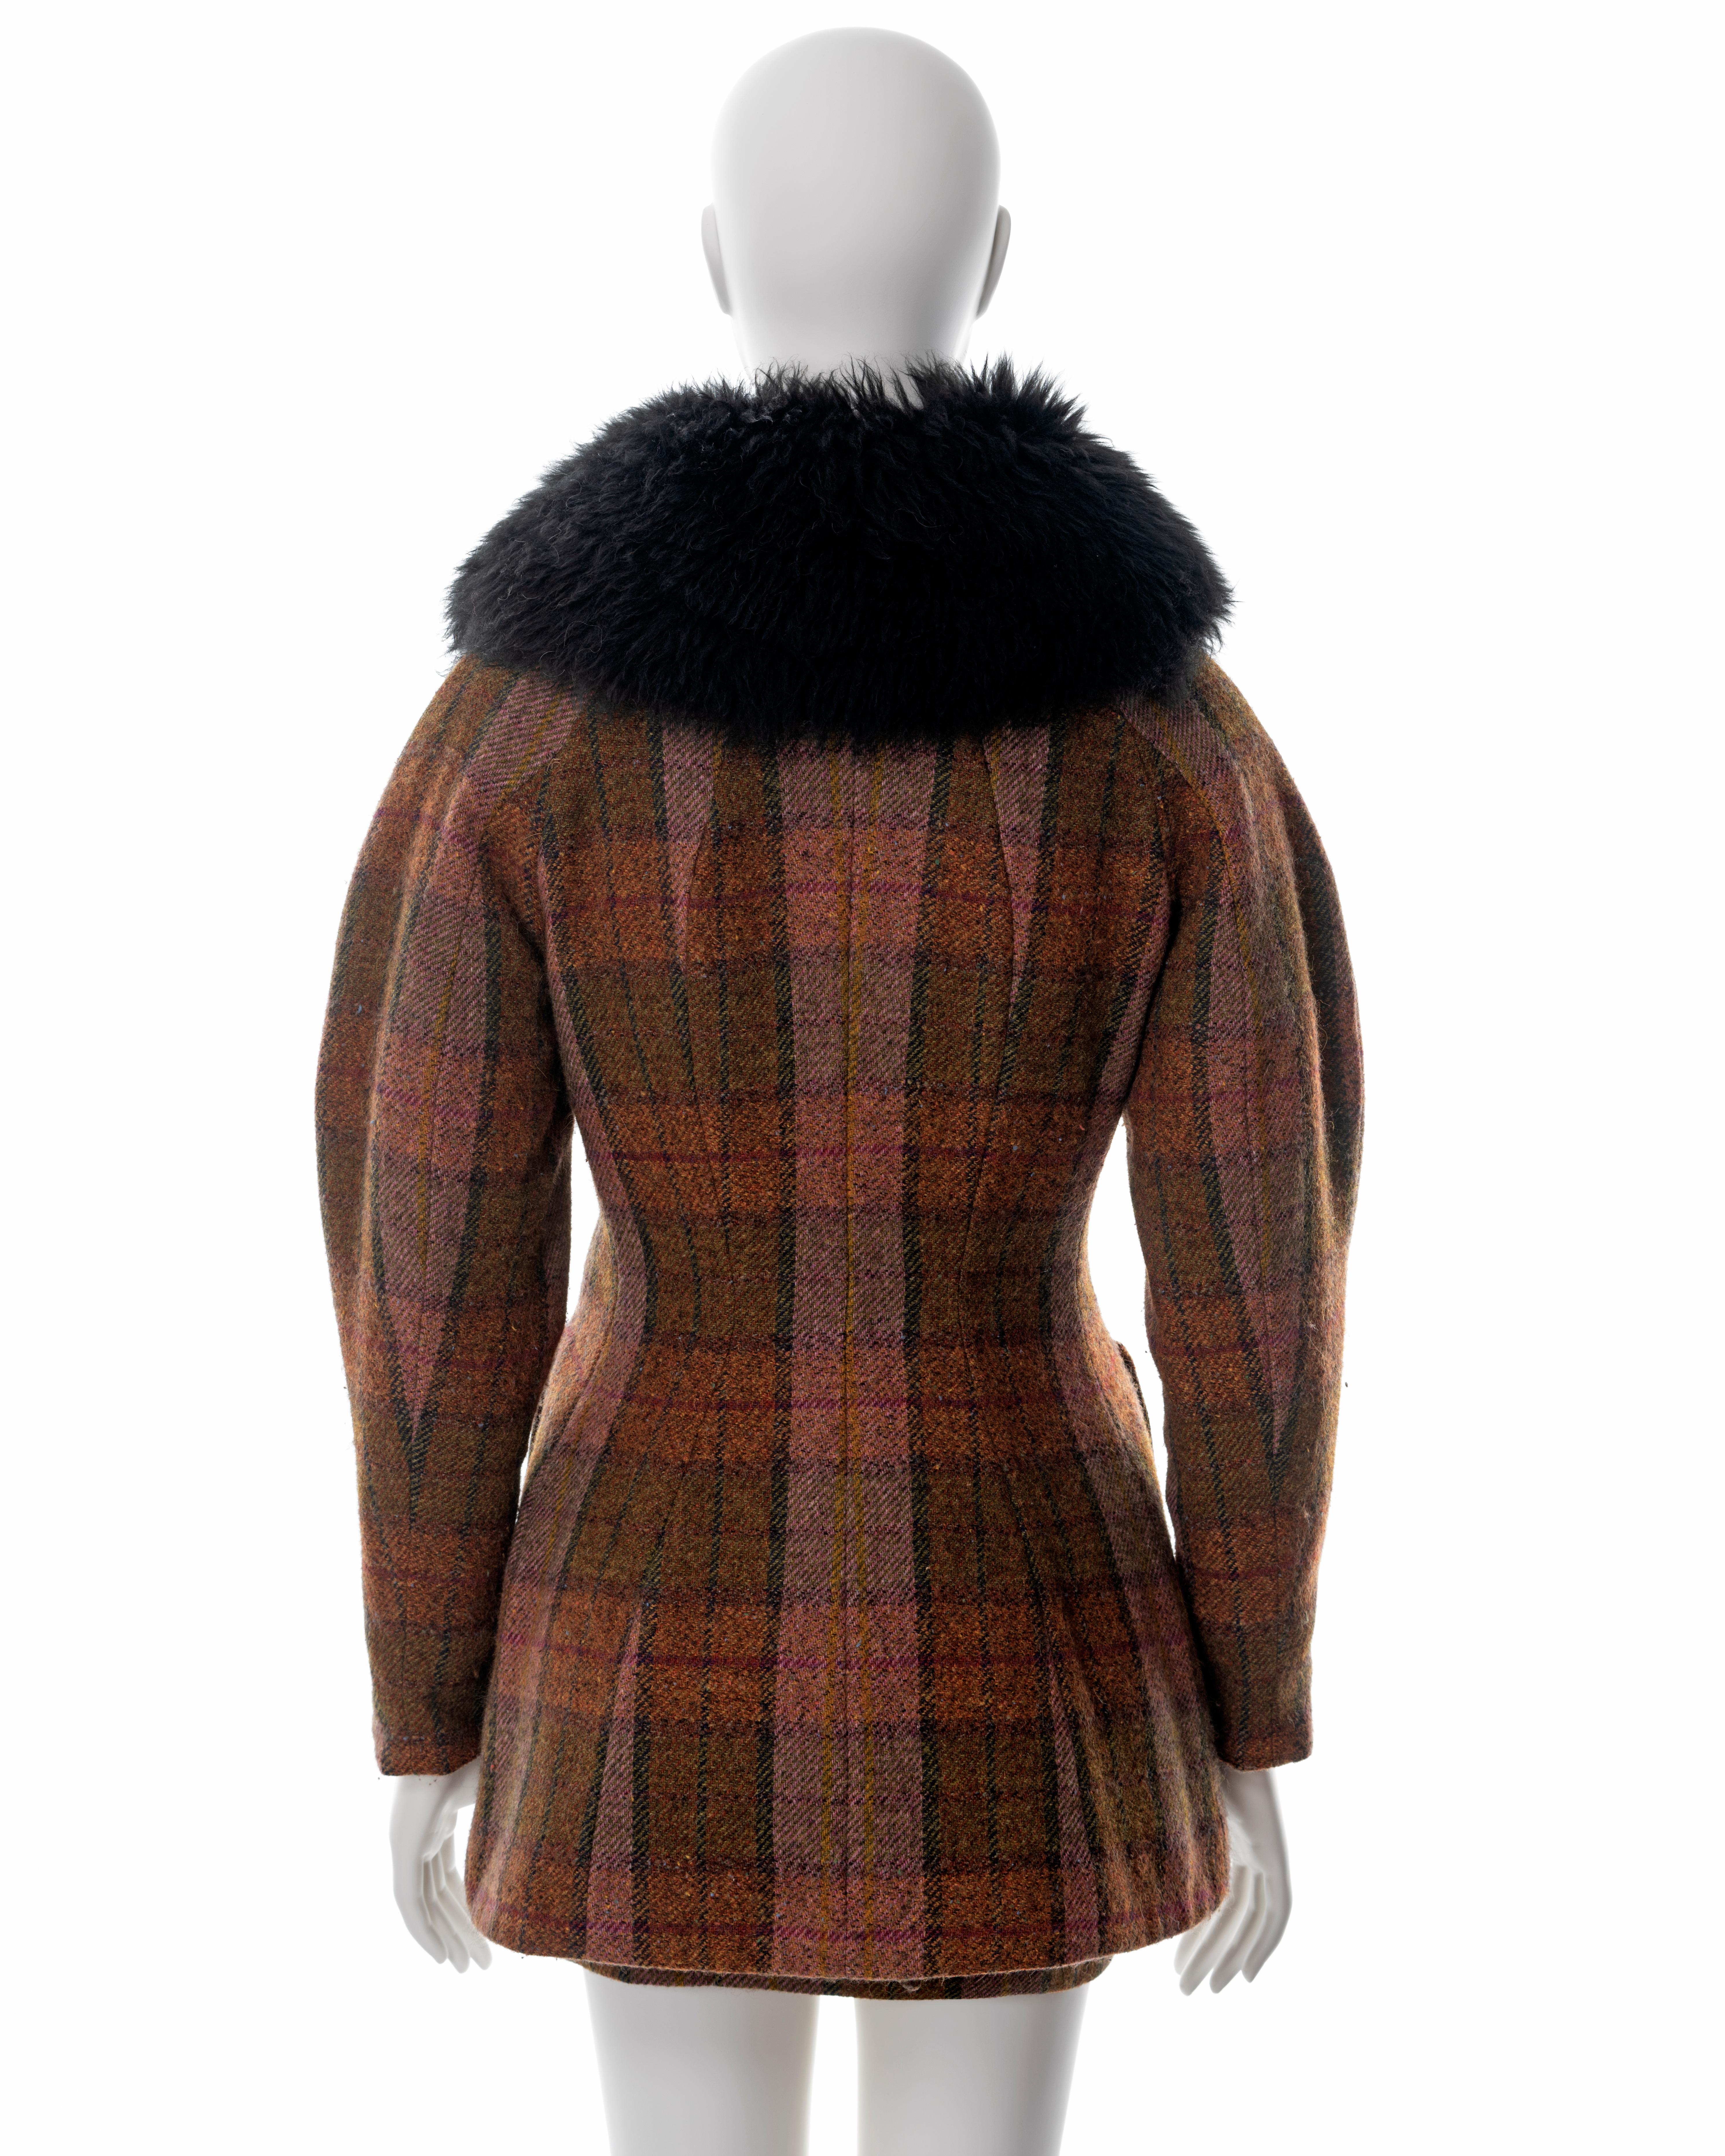 Vivienne Westwood brown tartan tweed skirt suit with sheepskin collar, fw 1995 4